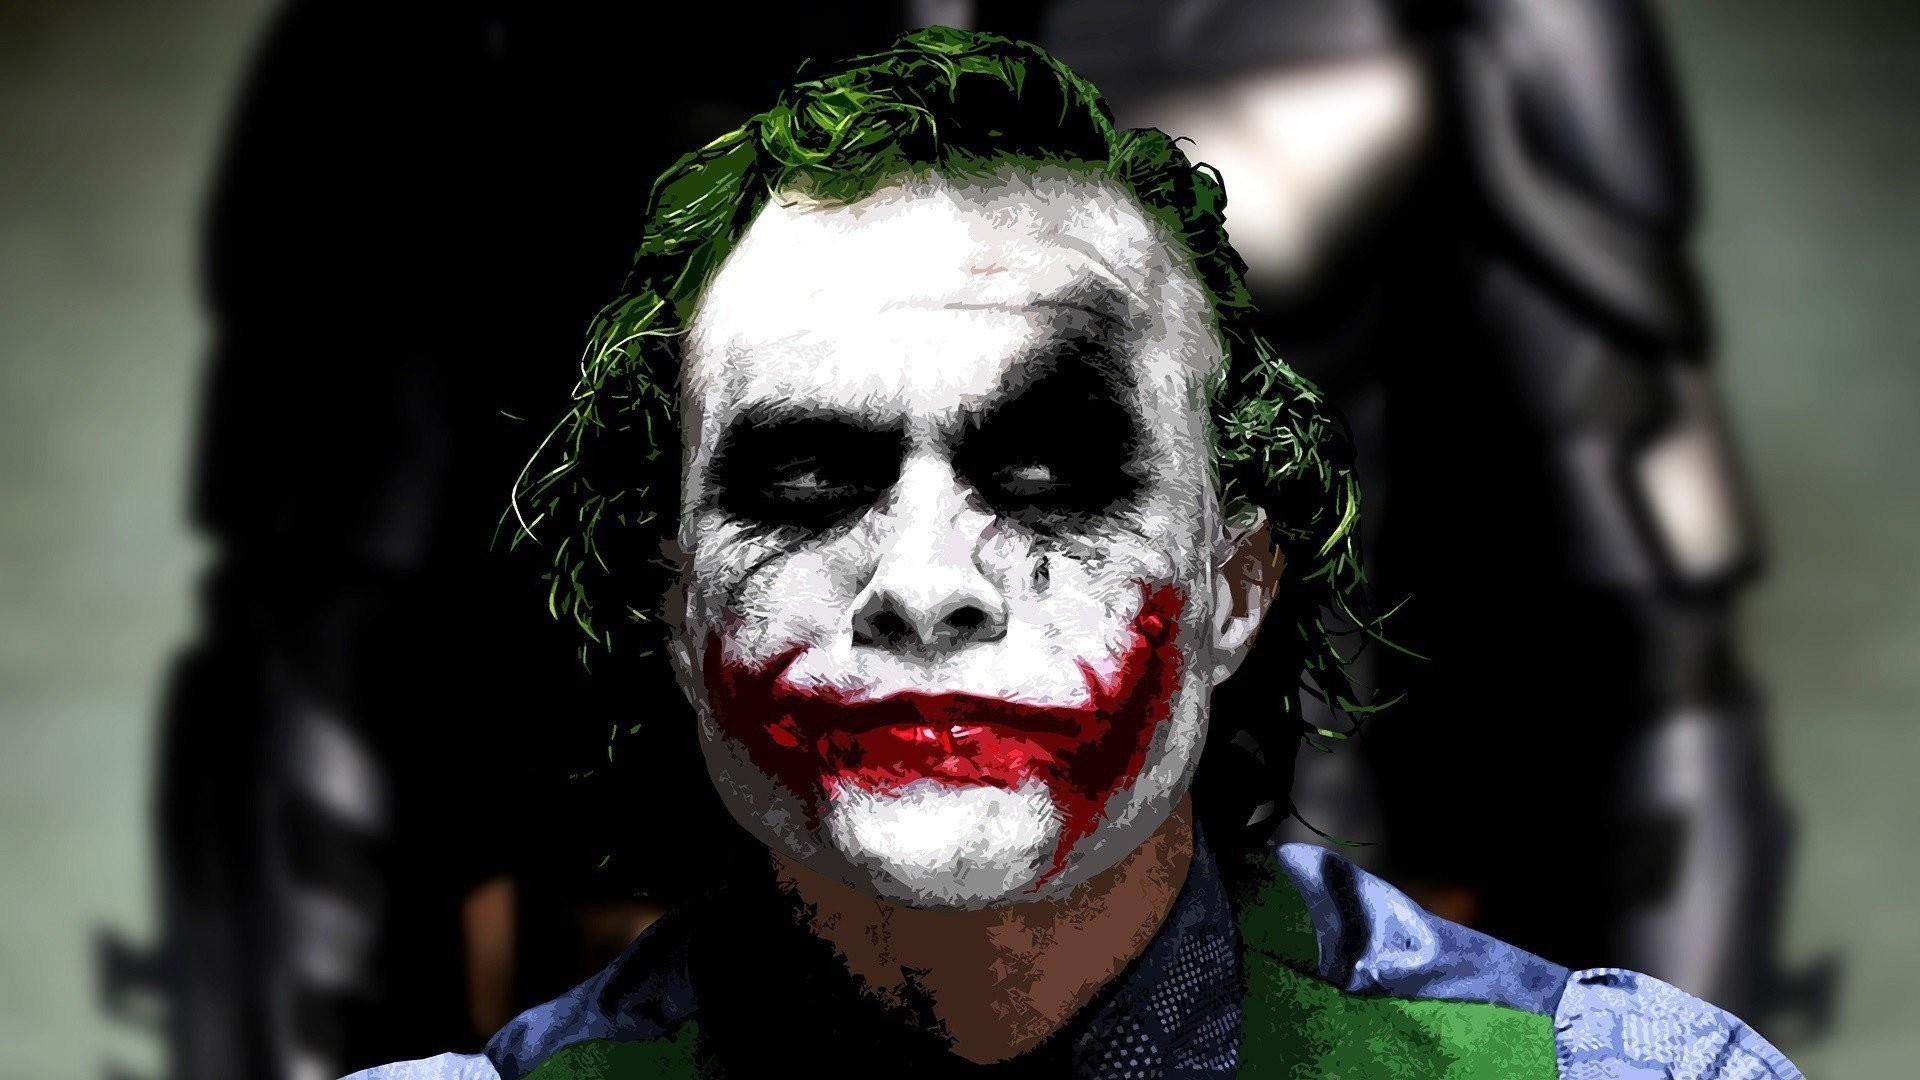 10 Top Heath Ledger Joker Image Full Hd 19201080 For Pc Background